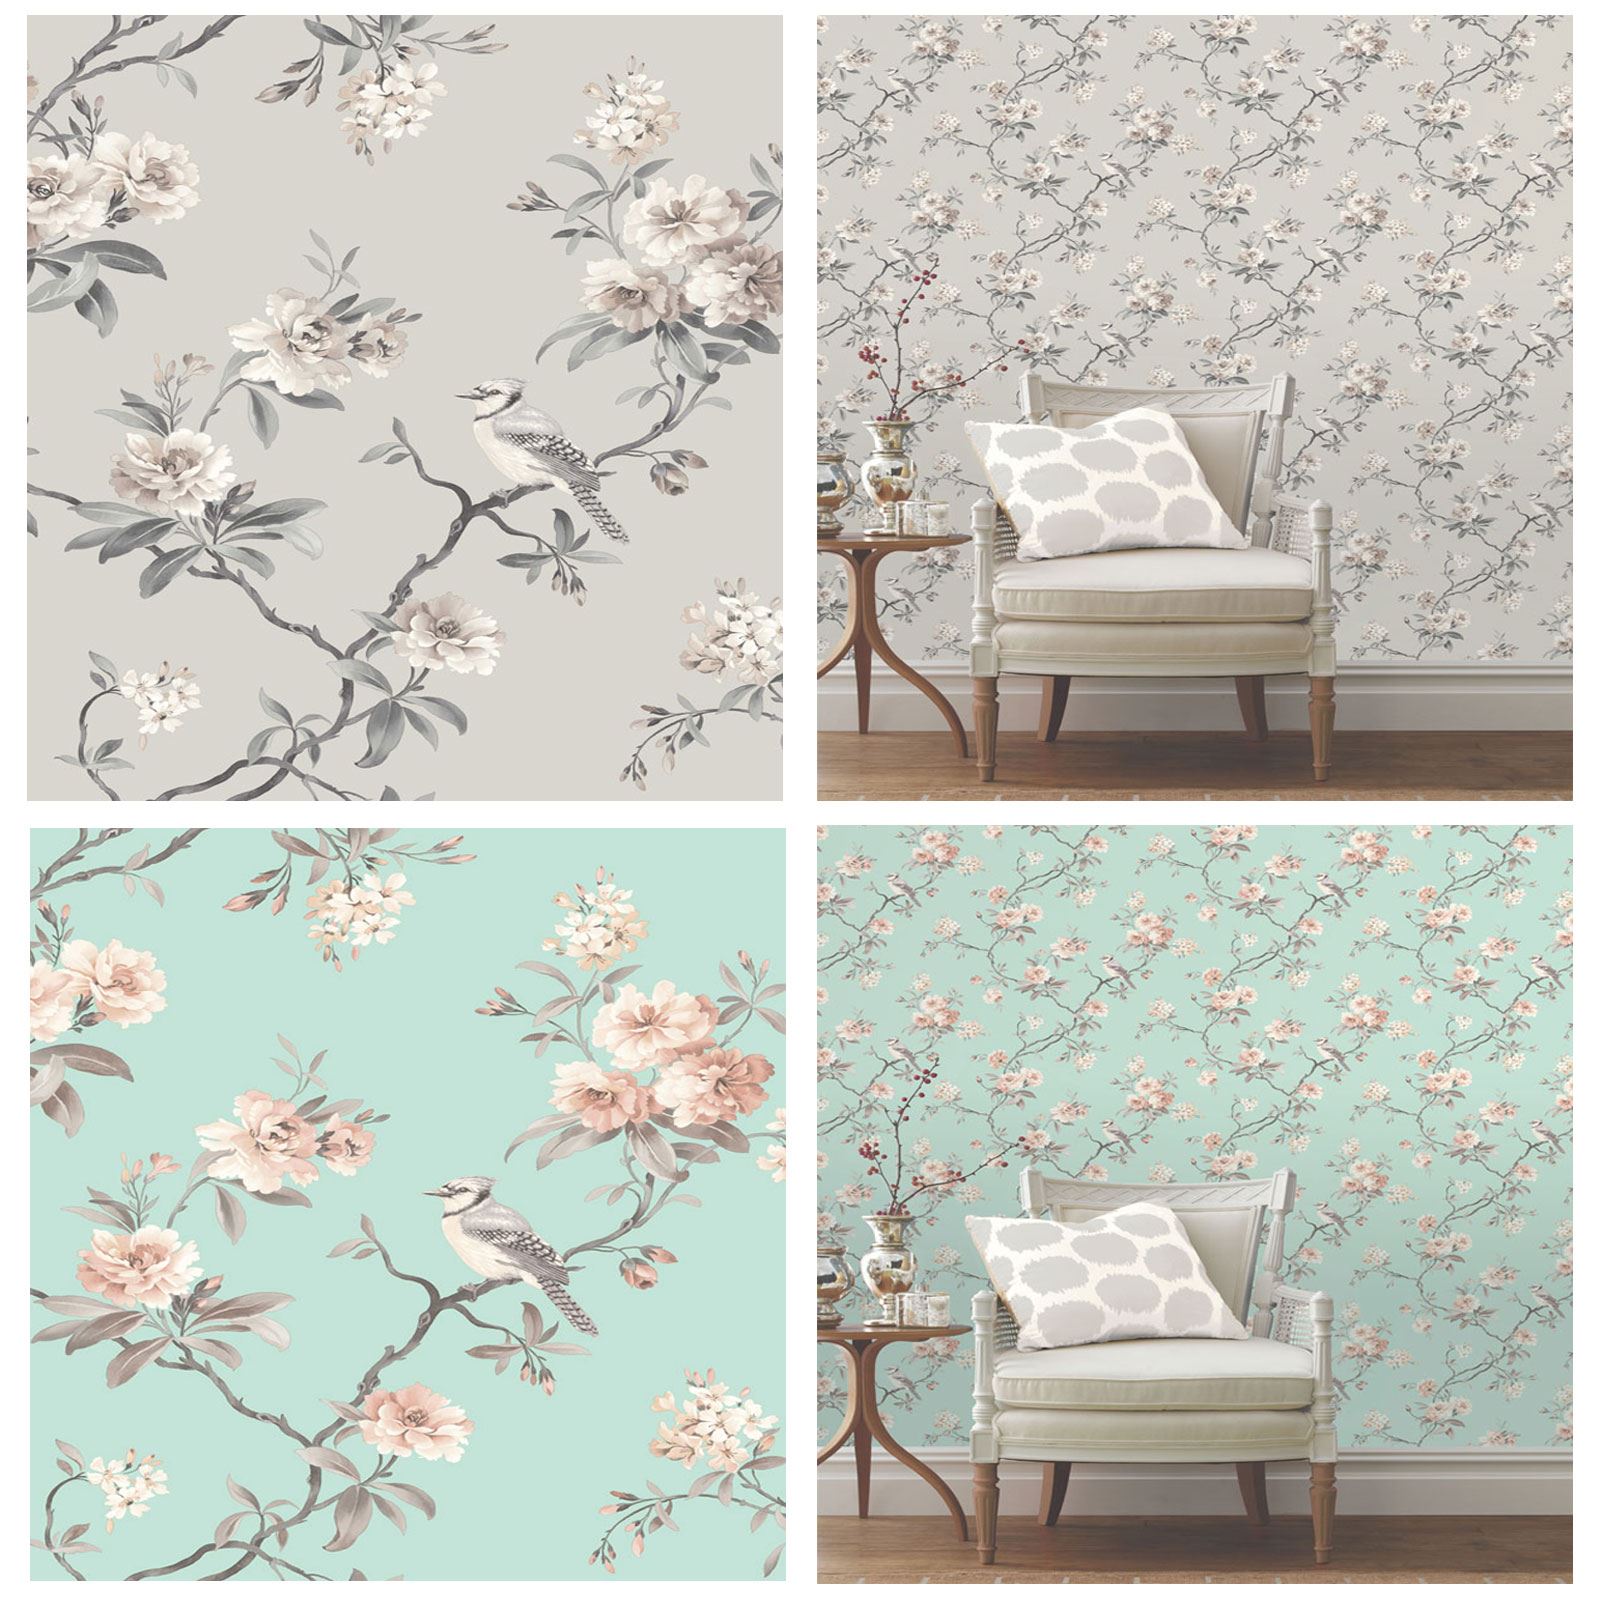 duck egg blue and grey wallpaper,wallpaper,aqua,pink,blossom,teal